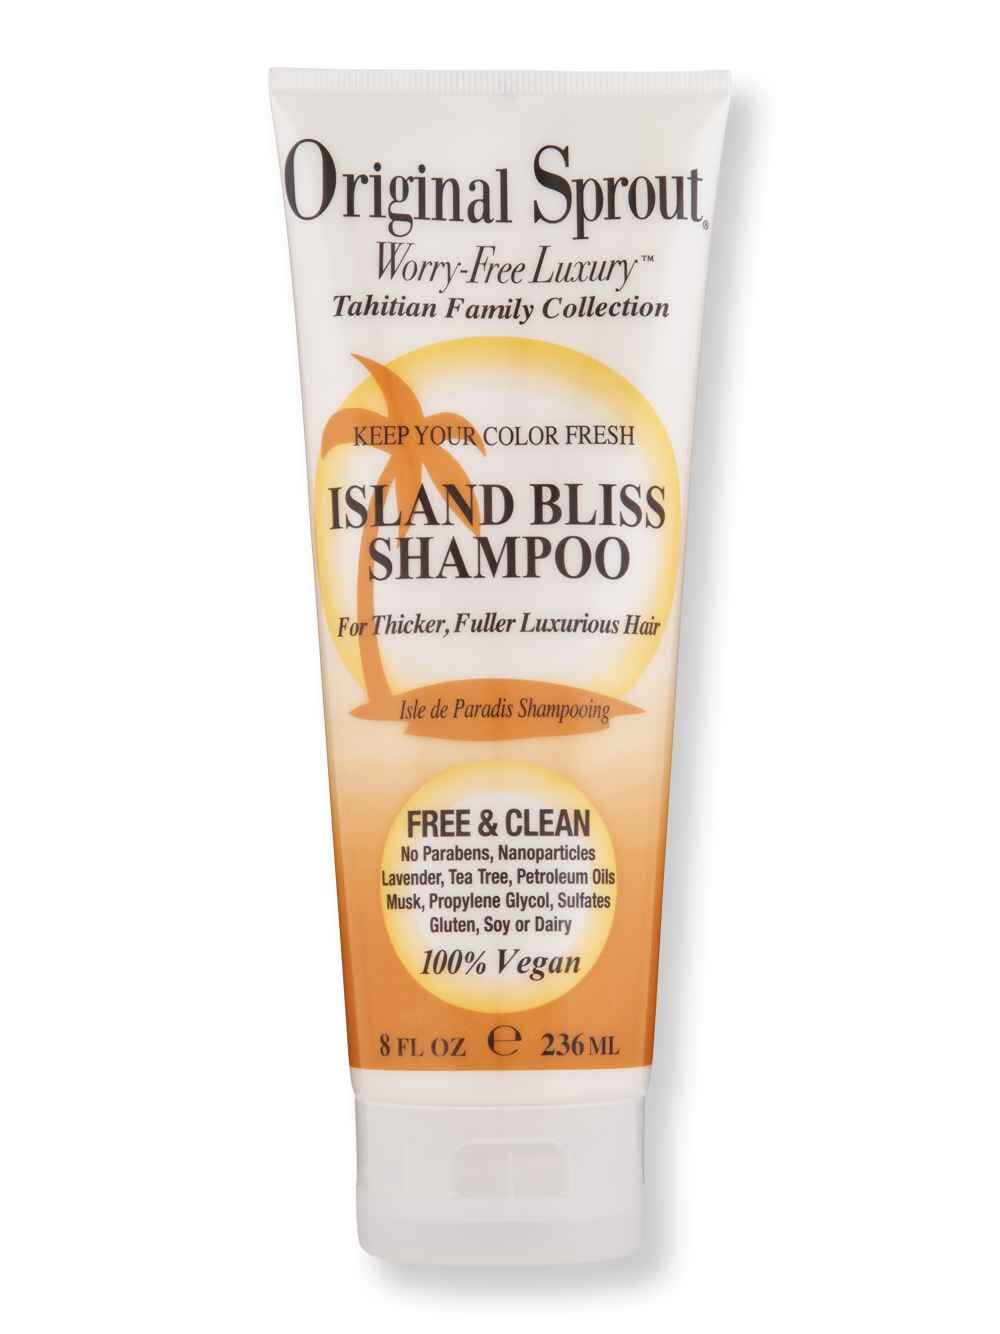 Original Sprout Original Sprout Island Bliss Shampoo 8 oz Shampoos 